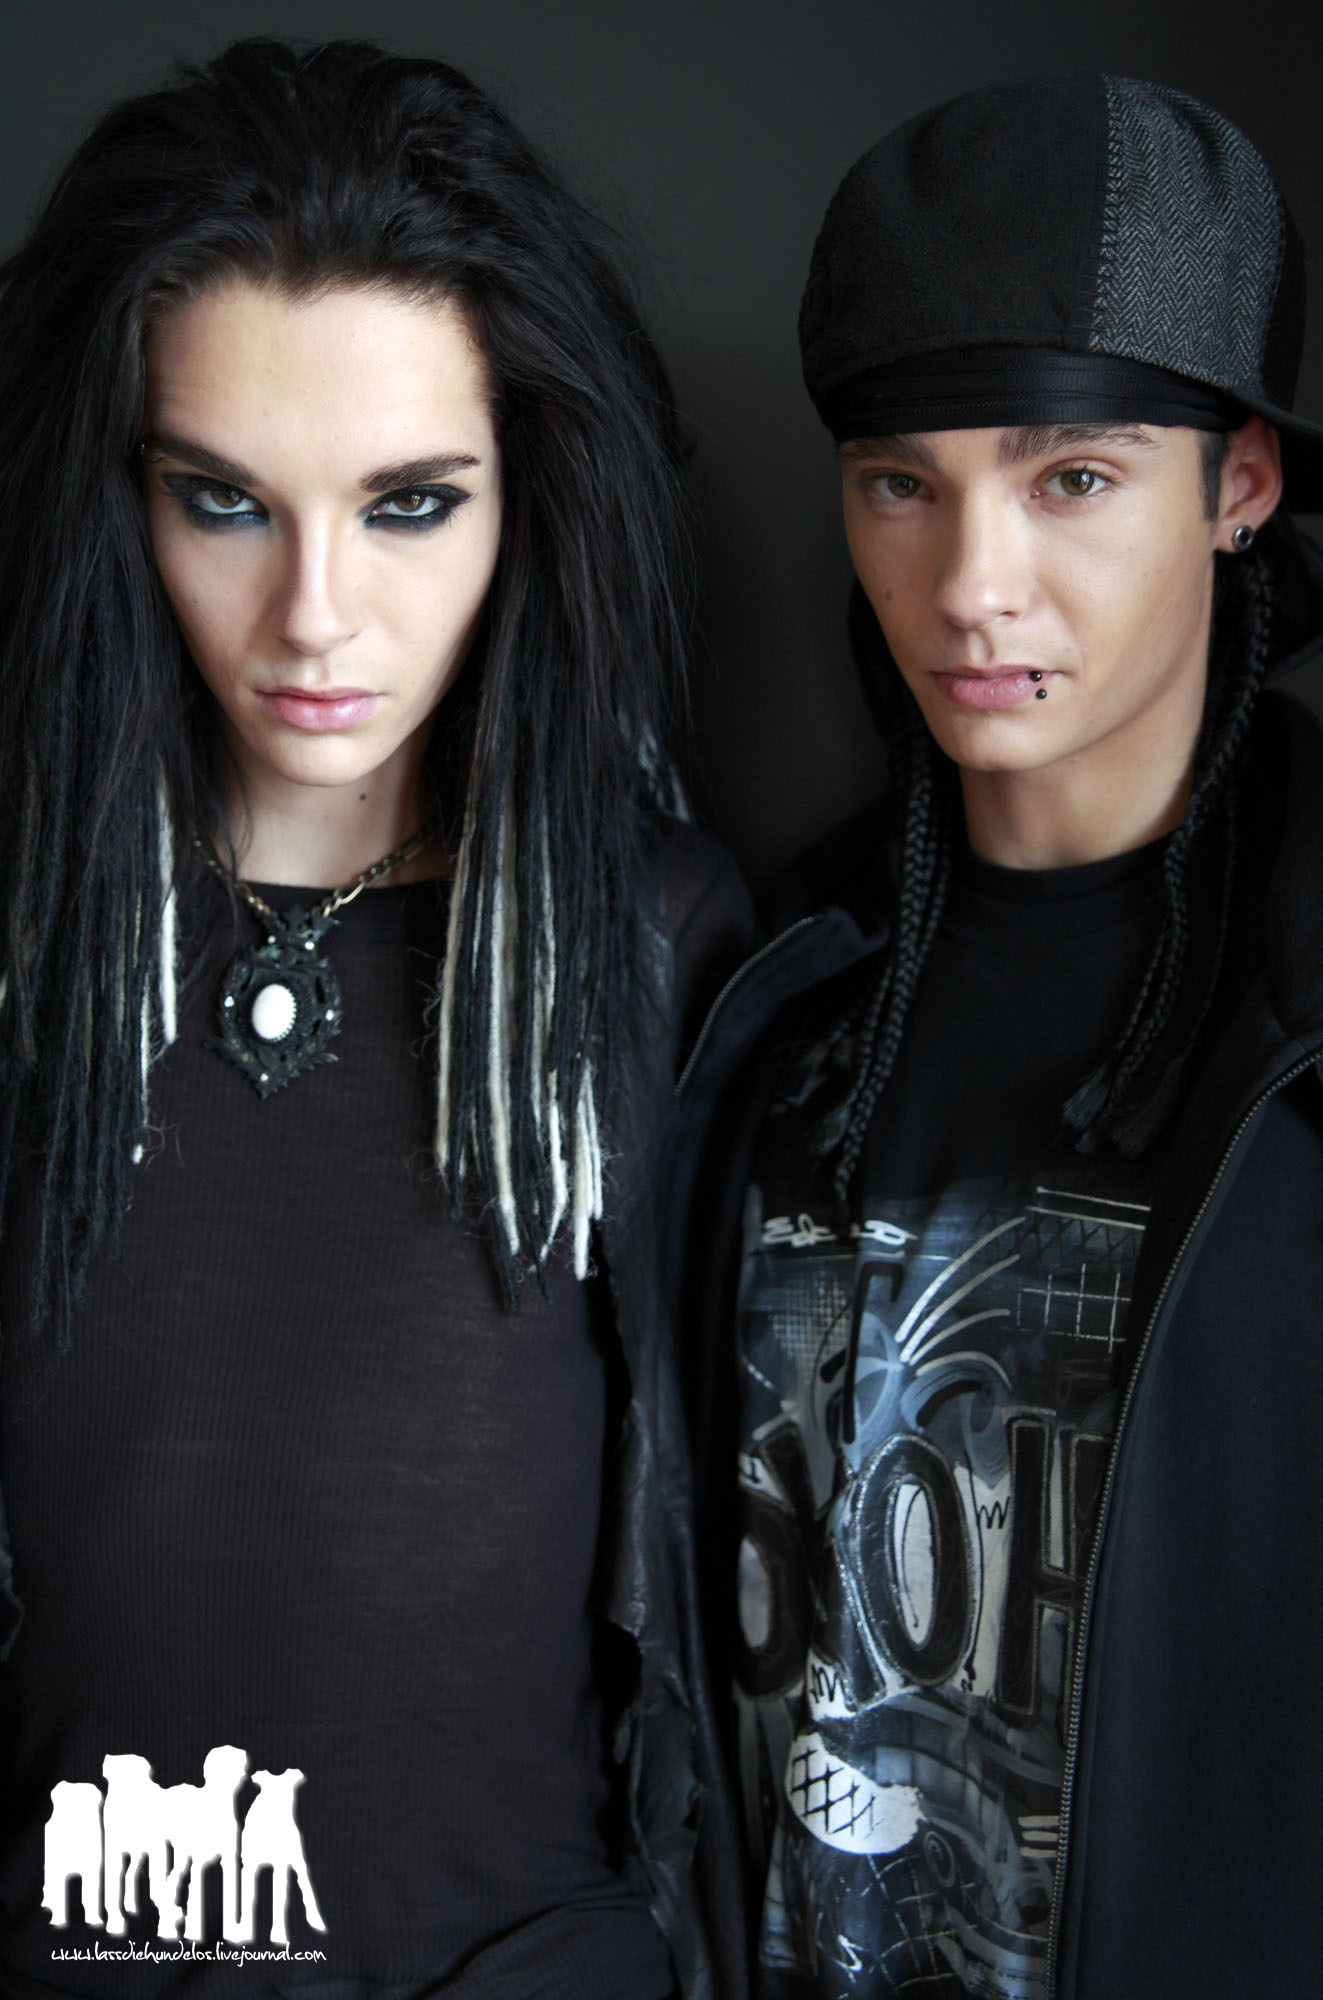 8k Tokio Hotel Images